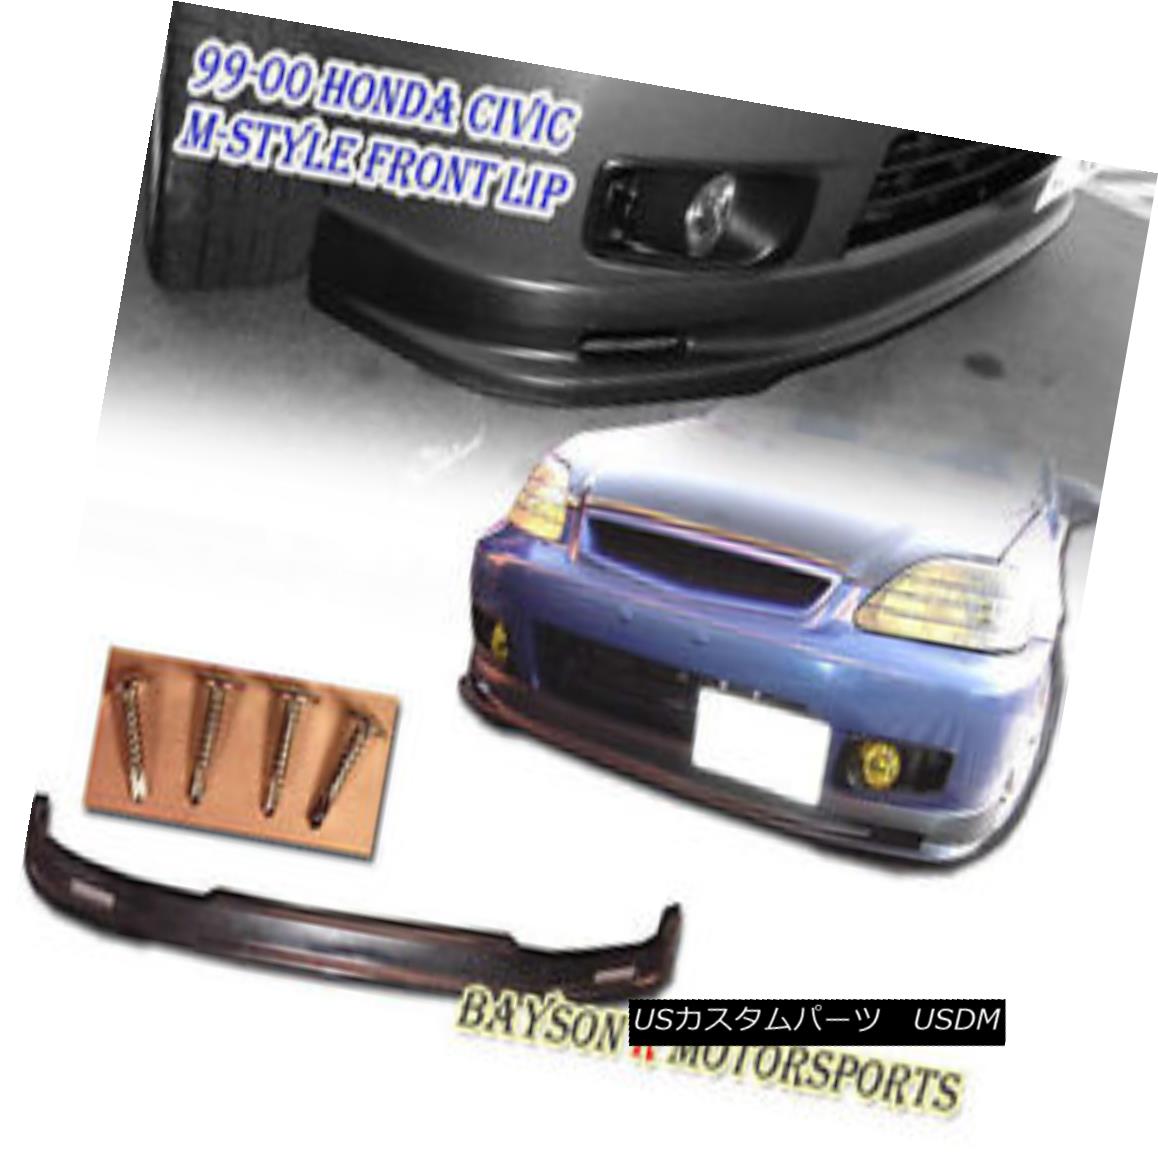 Mu-gen Style Front Lip (Urethane) Fits 99-00 Honda Civic 4dr カテゴリエアロパーツ状態新品車種HondaメーカーCivic発送詳細送料一律 1000円（※北海道、沖縄、離島は省く）商品詳細輸入商品の為、英語表記となります。 Brand: BaysonR Other Part Number: Sedan, Saloon Surface Finish: Unpainted Black Warranty: No Warranty Manufacturer Part Number: FLIP-PU-C9900-MU-A4 Material: Urethane (Flexible) Interchange Part Number: EJ-EJ6-EJ8-EJ9-EK-EK1-EK2-EK3-EK4-EK5-EK8※以下の注意事項をご理解頂いた上で、ご入札下さい※■海外輸入品の為、NC,NRでお願い致します。■フィッテングや車検対応の有無については、画像と説明文よりお客様の方にてご判断をお願いしております。■USのカスタムパーツは国内の純正パーツを取り外した後、接続コネクタが必ずしも一致するとは限らず、加工が必要な場合がございます。■商品説明文中に英語にて”保障”に関する記載があっても適応はされませんので、ご理解ください。■初期不良（到着より7日以内）のみ保証対象とします。ただし、取り付け後は、保証対象外とします。■海外倉庫から到着した製品を、再度国内で検品を行い、日本郵便または佐川急便にて発送となります。■お届けまでには、2〜3週間程頂いております。ただし、天候次第で多少遅れが発生する場合もあります。■商品落札後のお客様のご都合によるキャンセルはお断りしておりますが、商品落札金額の30％の手数料をいただいた場合のみお受けいたします。■他にもUSパーツを多数出品させて頂いておりますので、ご覧頂けたらと思います。■USパーツの輸入代行も行っておりますので、ショップに掲載されていない商品でもお探しする事が可能です!!お気軽にお問い合わせ下さい。&nbsp;